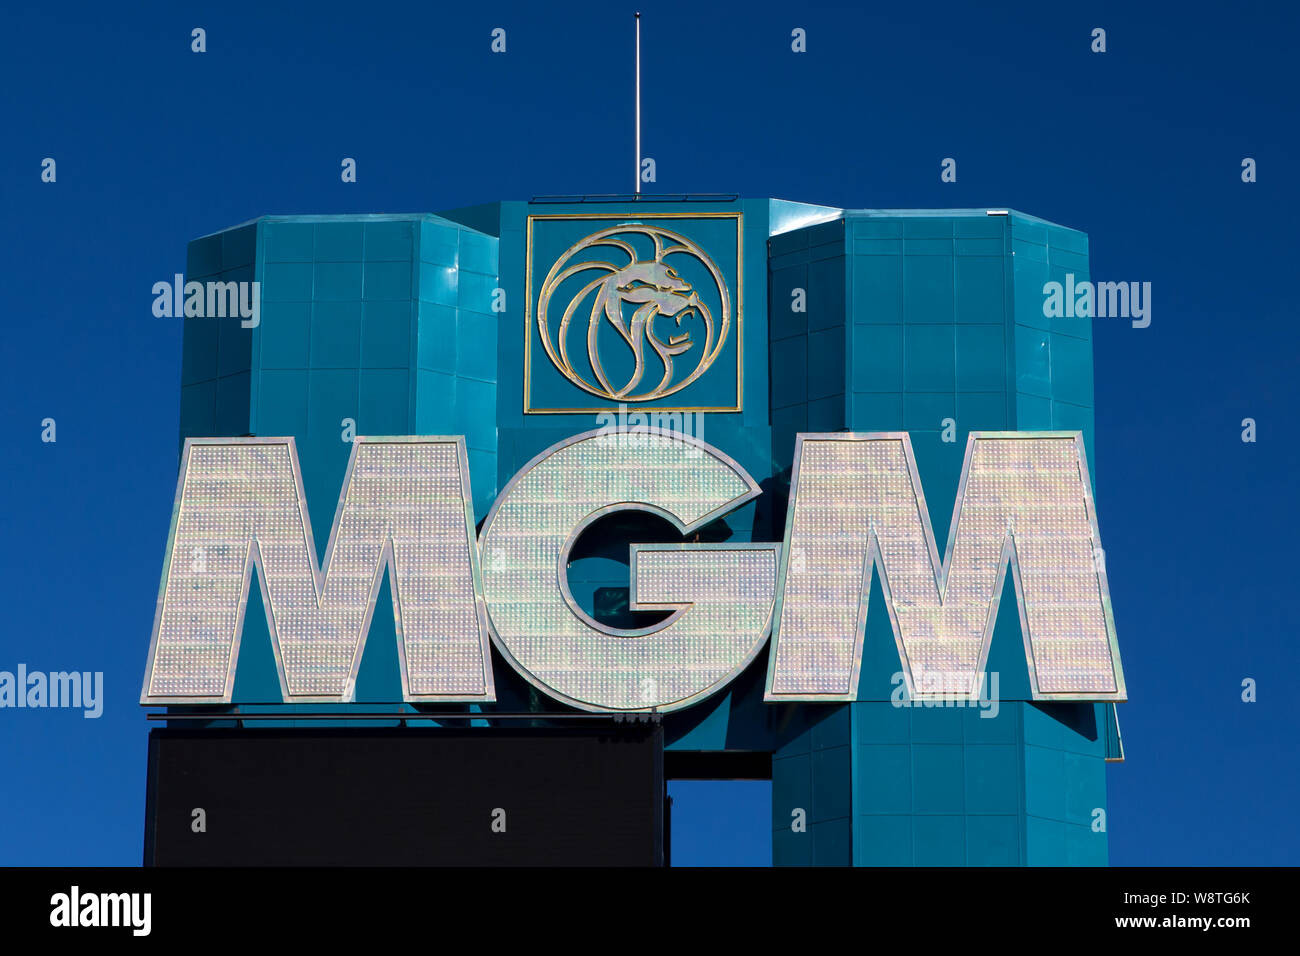 LAS VEGAS, NV/USA - Febrero 15, 2016:el MGM Grand Hotel y Casino de Las Vegas. El MGM Grand de Las Vegas es un hotel casino localizado en el Strip de Las Vegas. Foto de stock